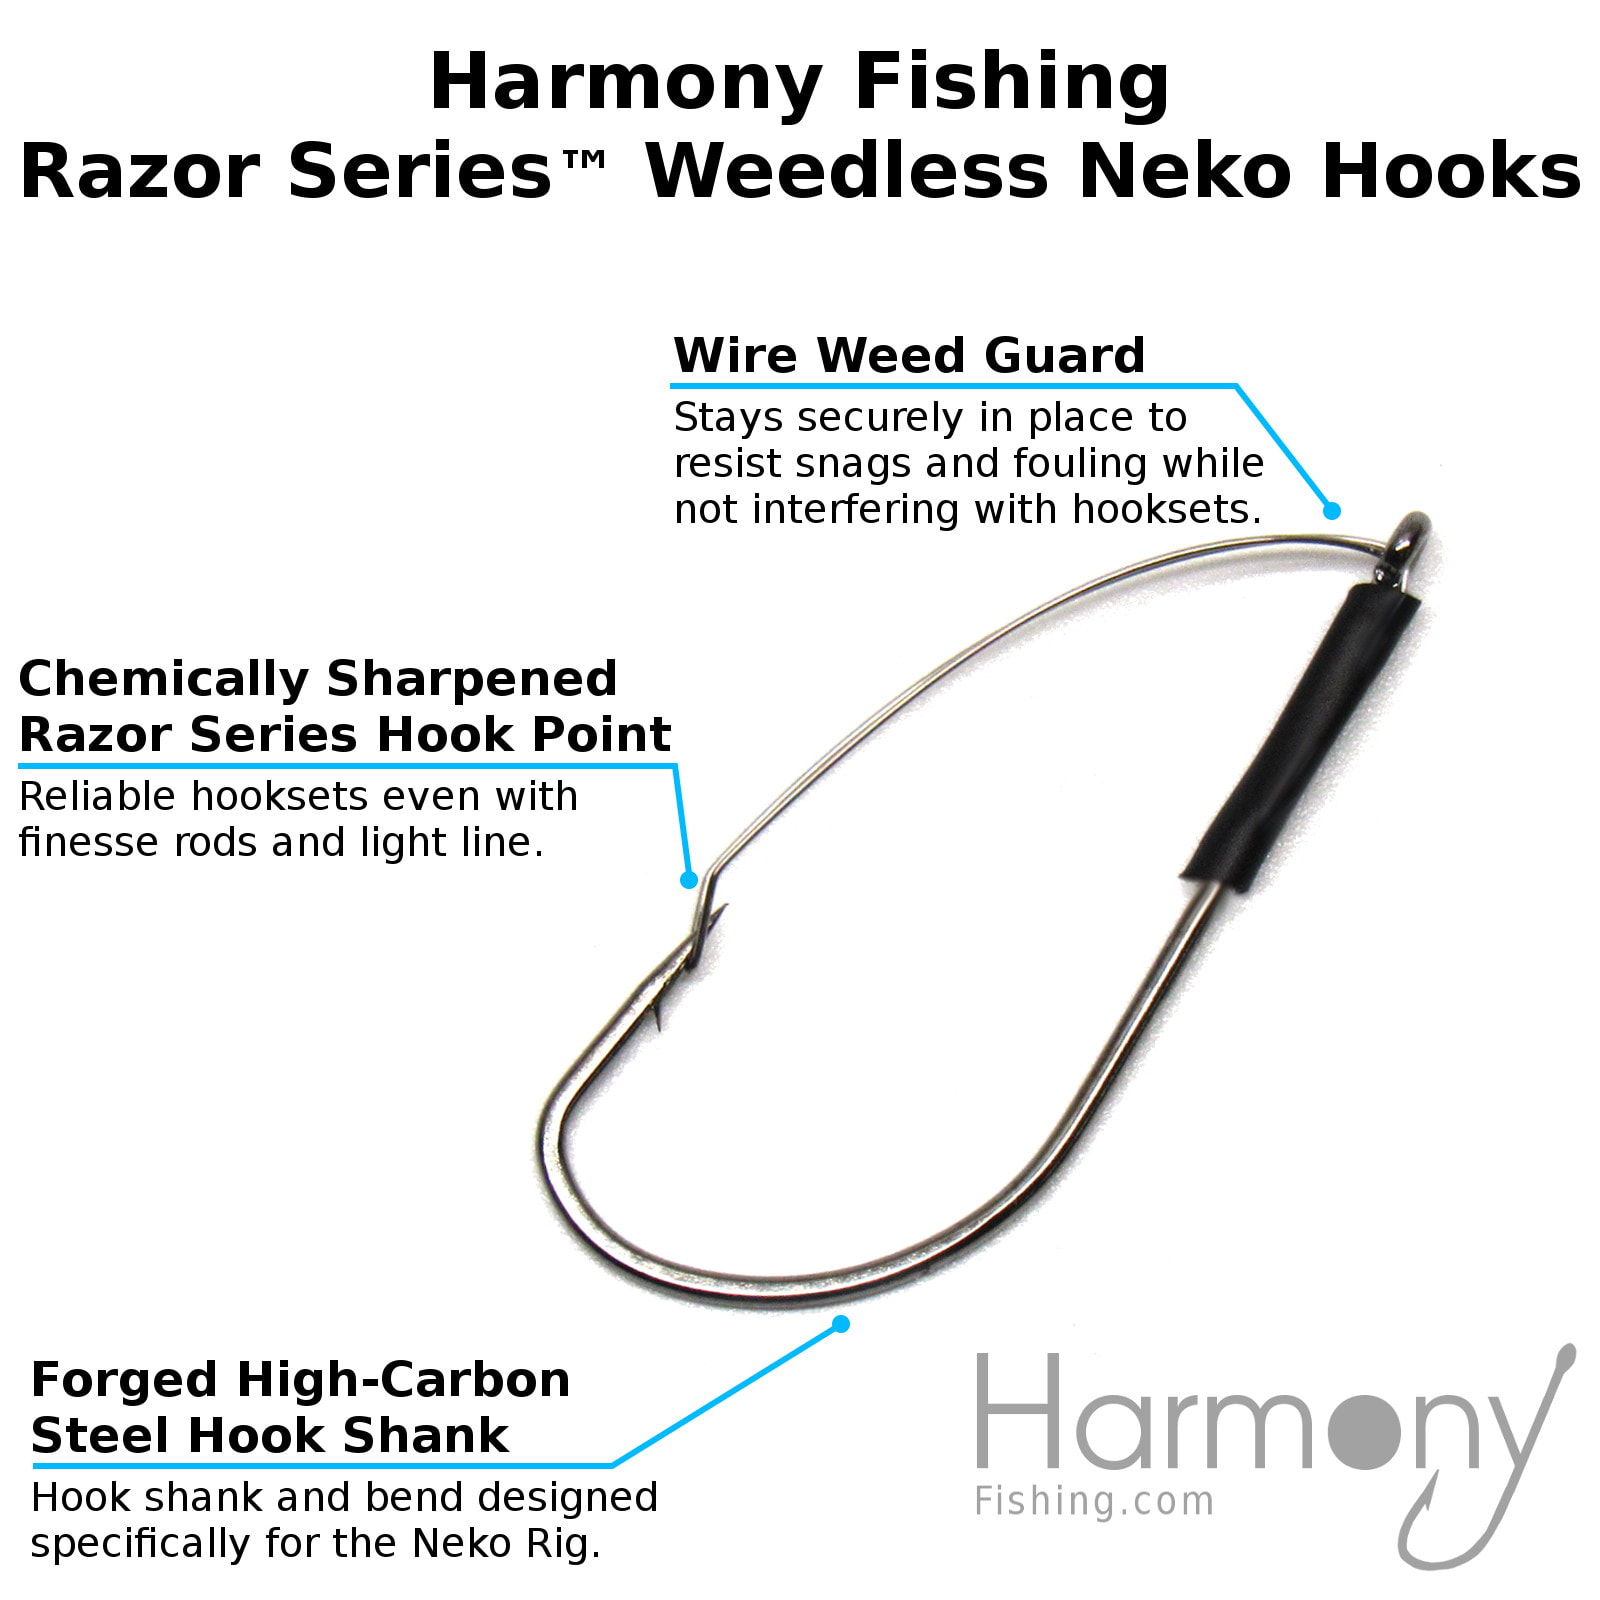 Razor Series Weedless Neko Hooks